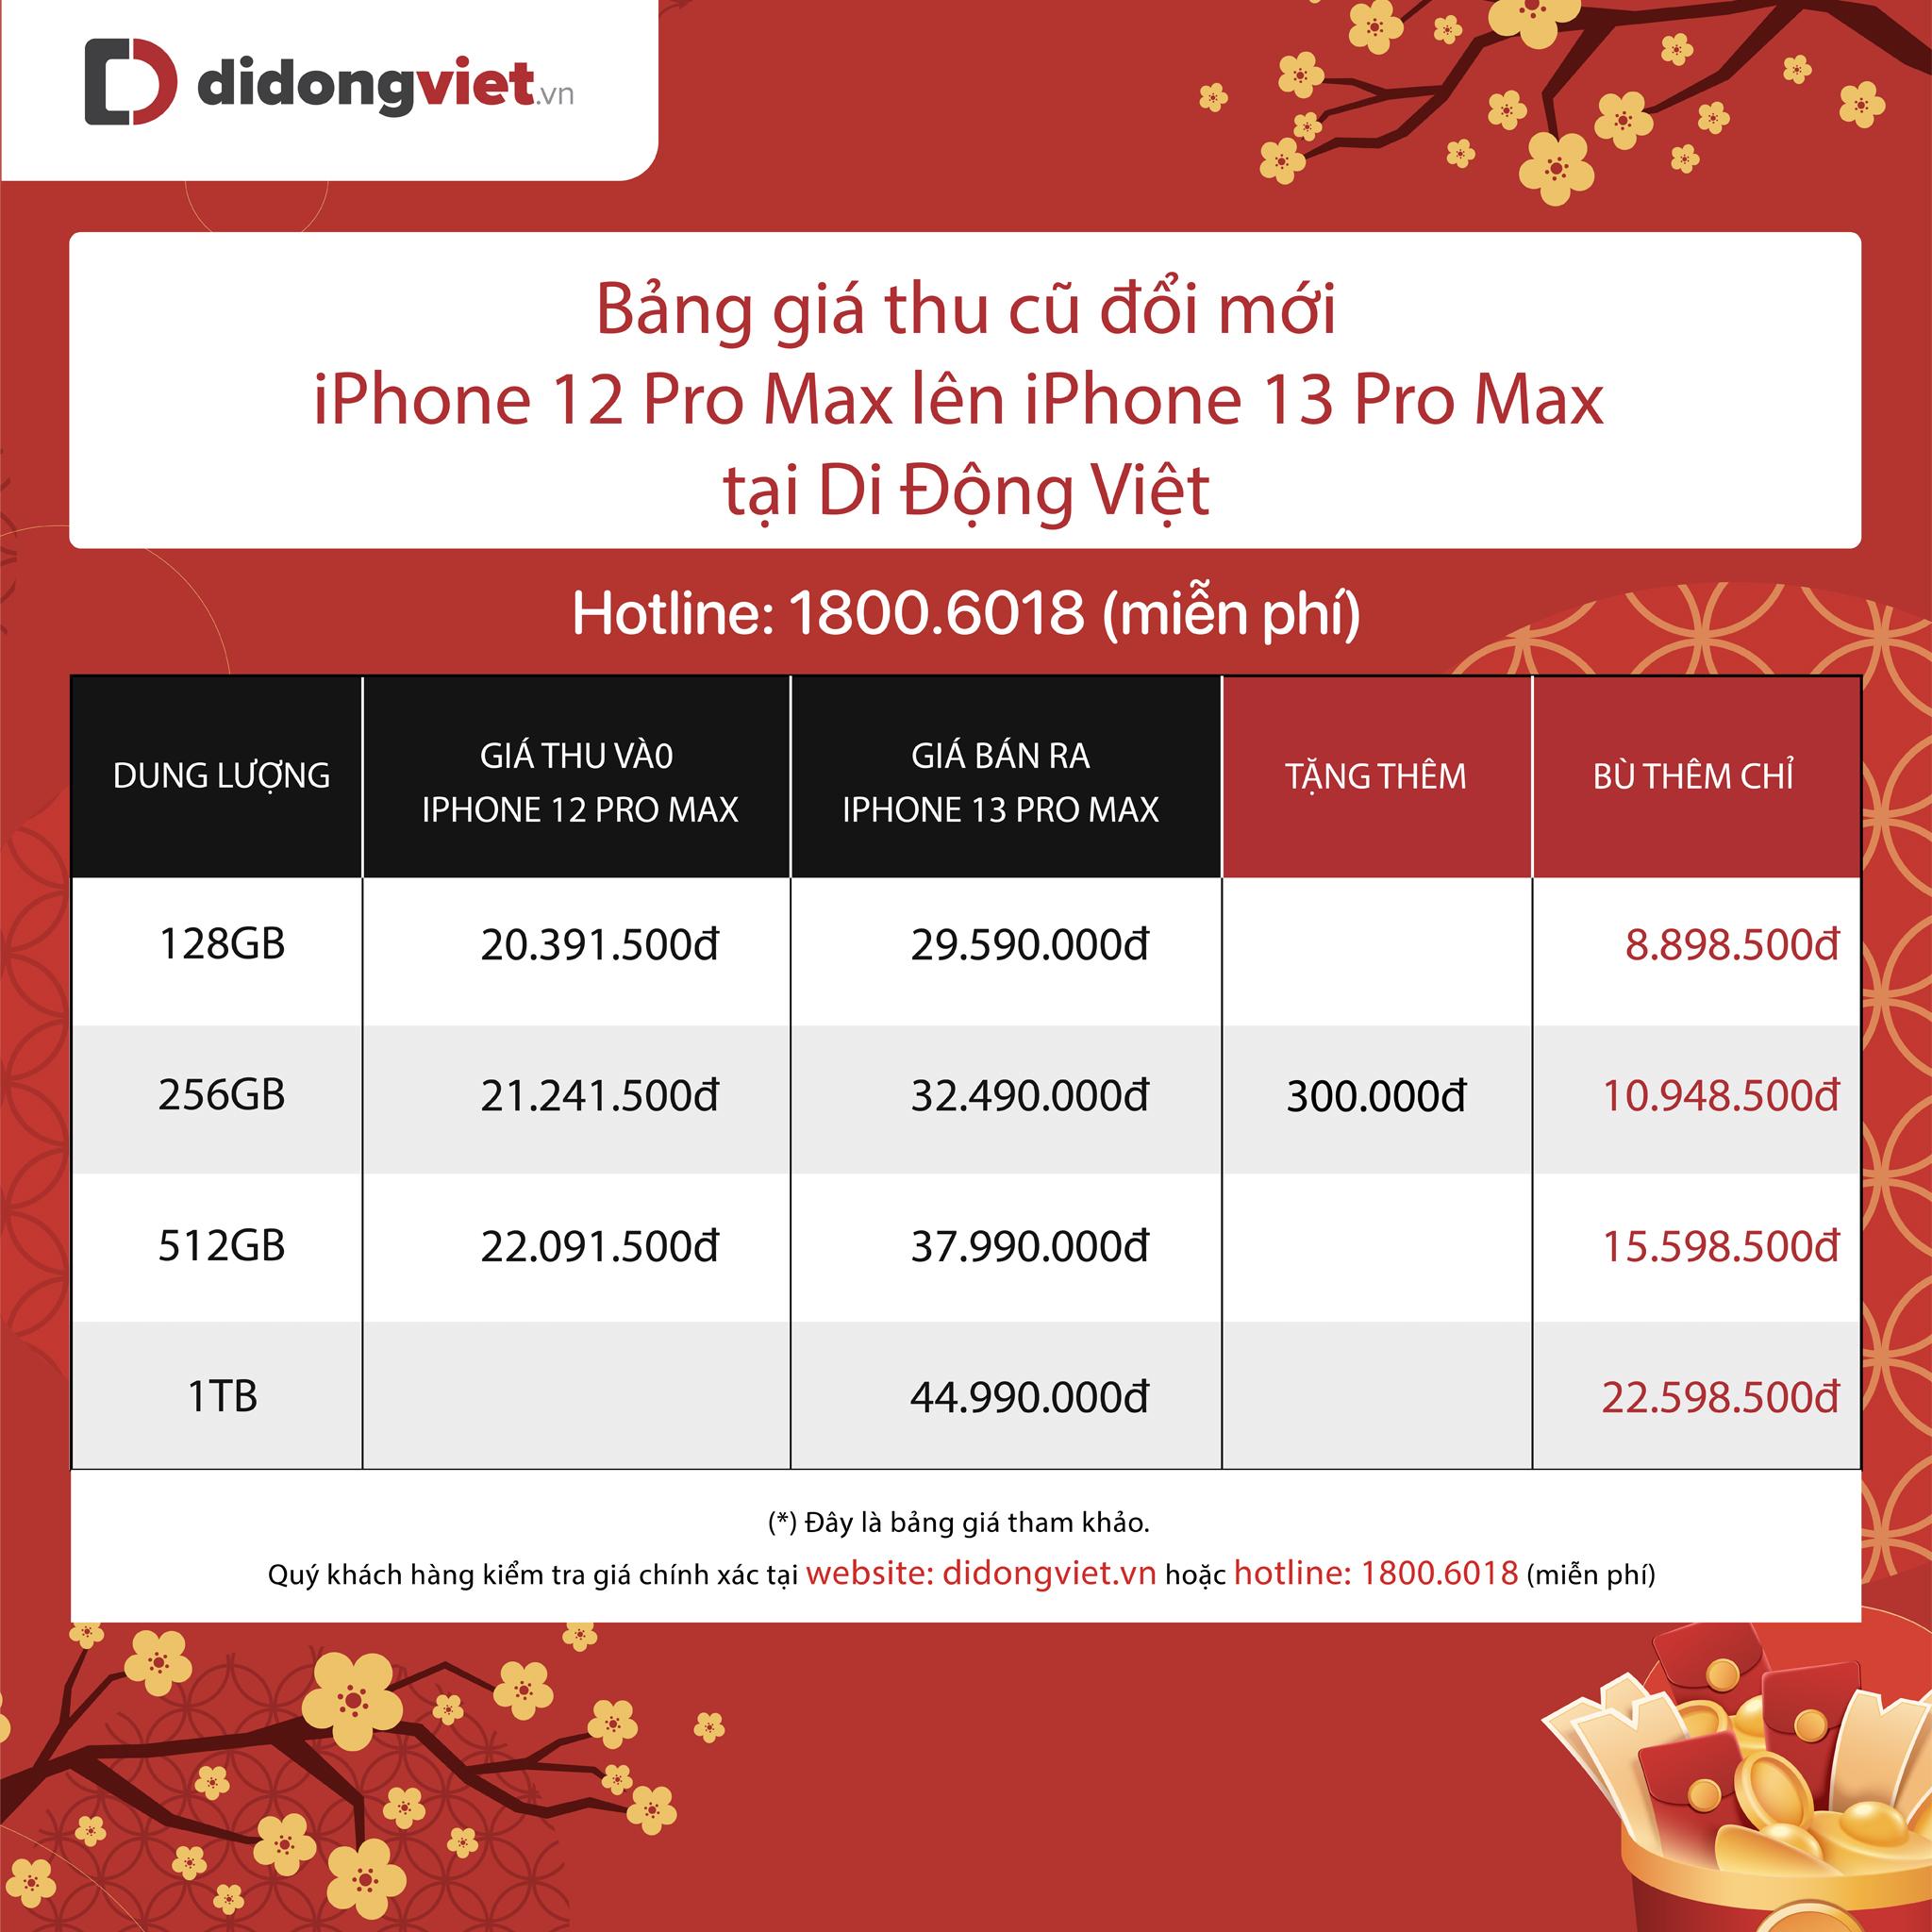 Giá về mức 29 triệu đồng, iPhone 13 Pro Max bán chạy nhất dịp Tết